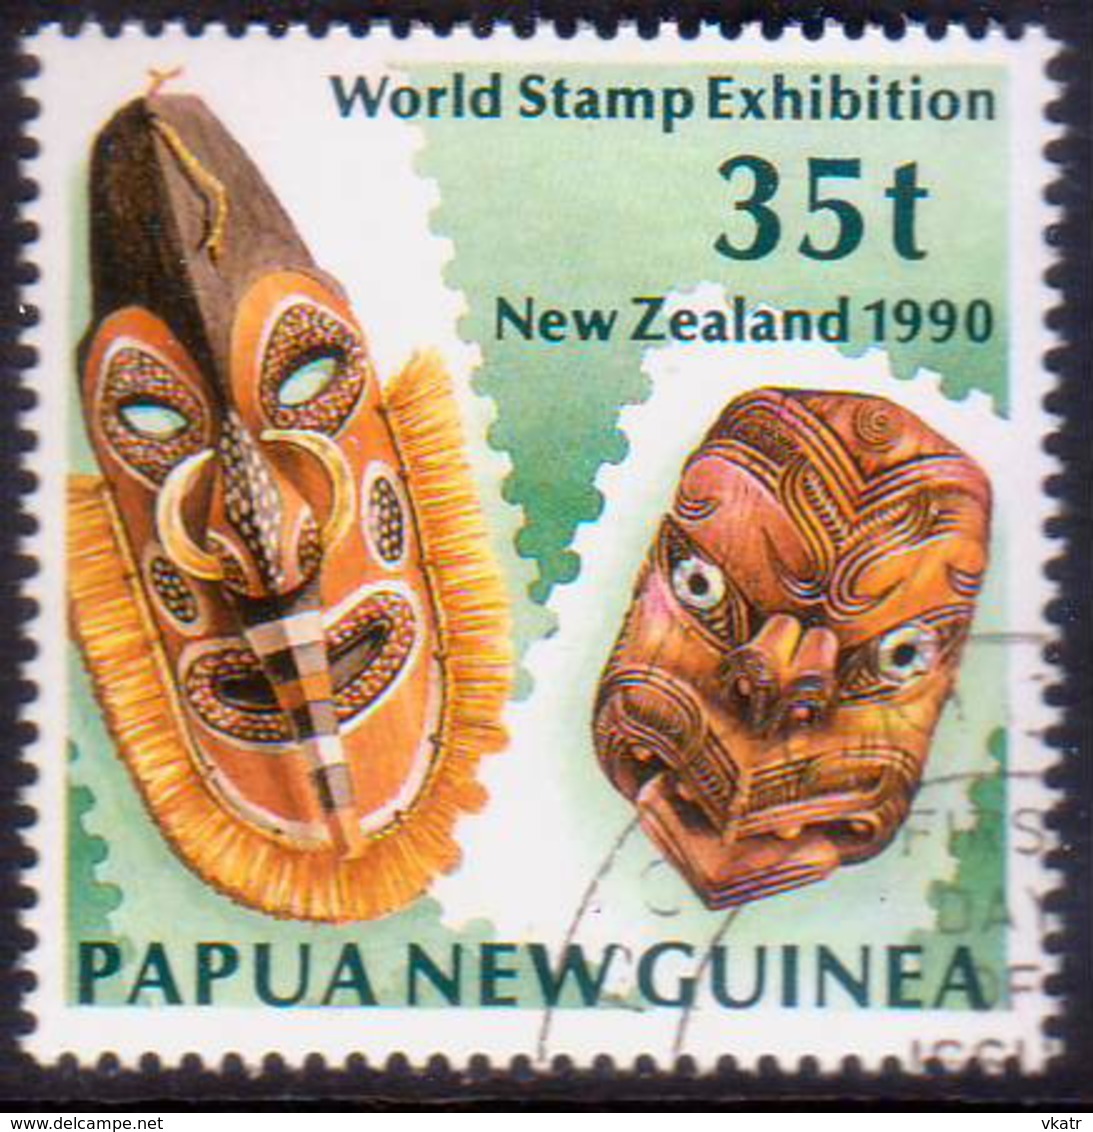 PAPUA NEW GUINEA 1990 SG #621 35t Used "New Zealand 1990" - Papua New Guinea